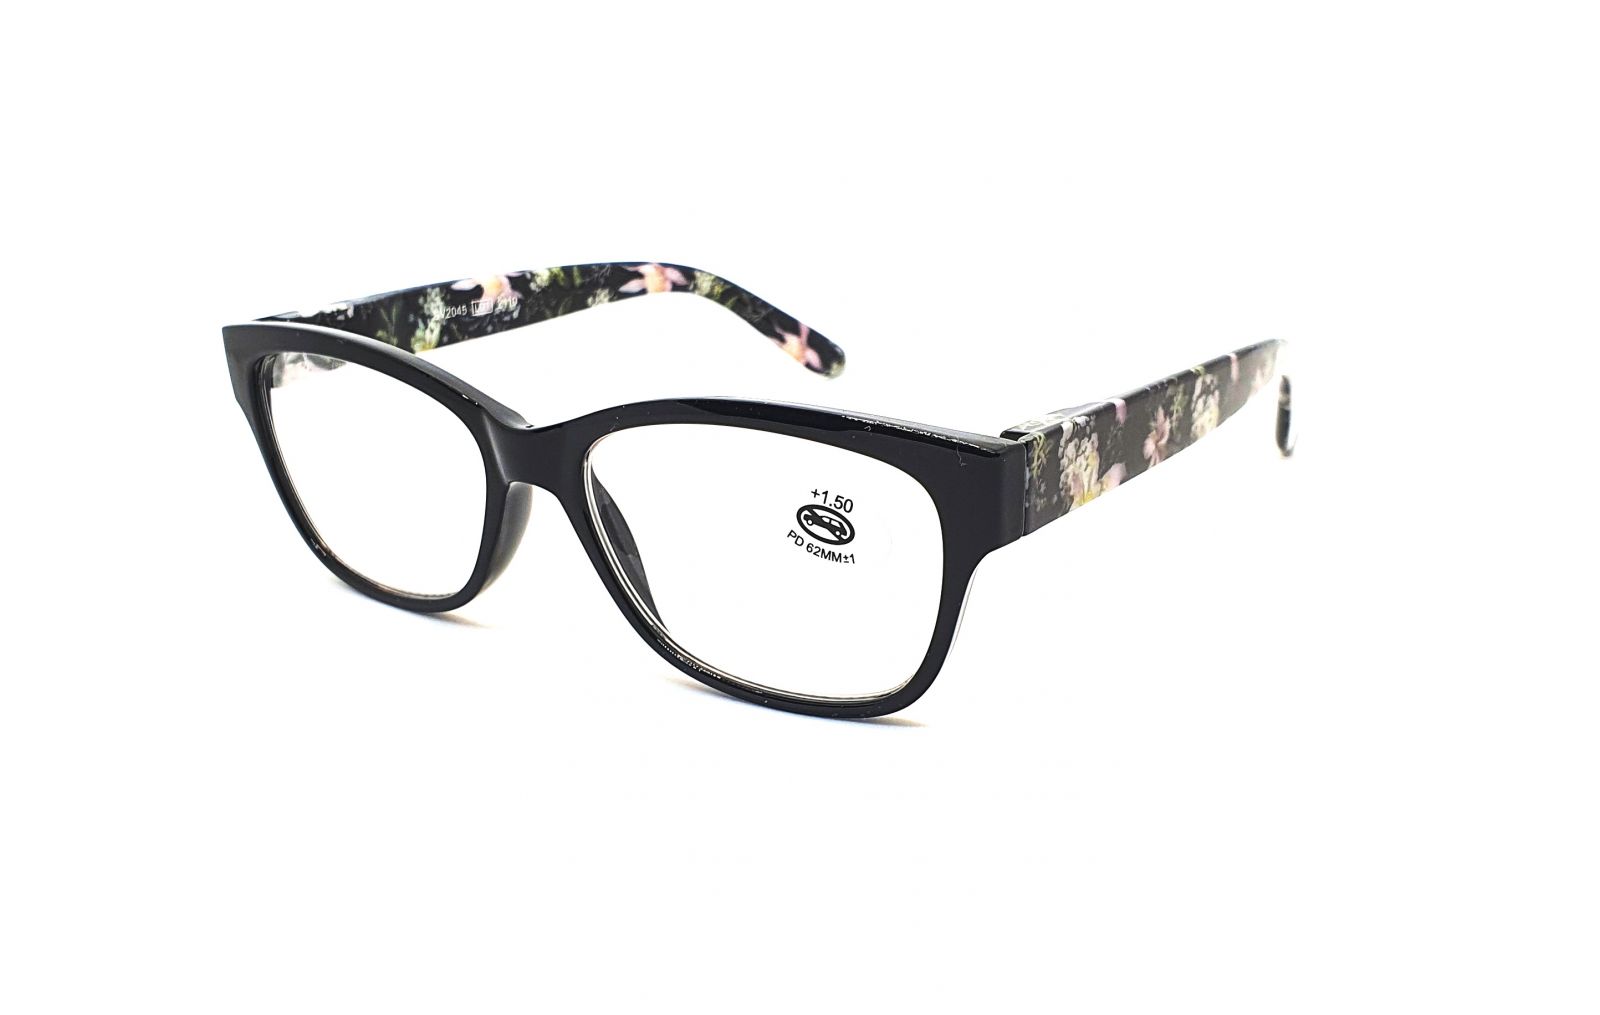 Dioptrické brýle SV2045 +1,00 black flex